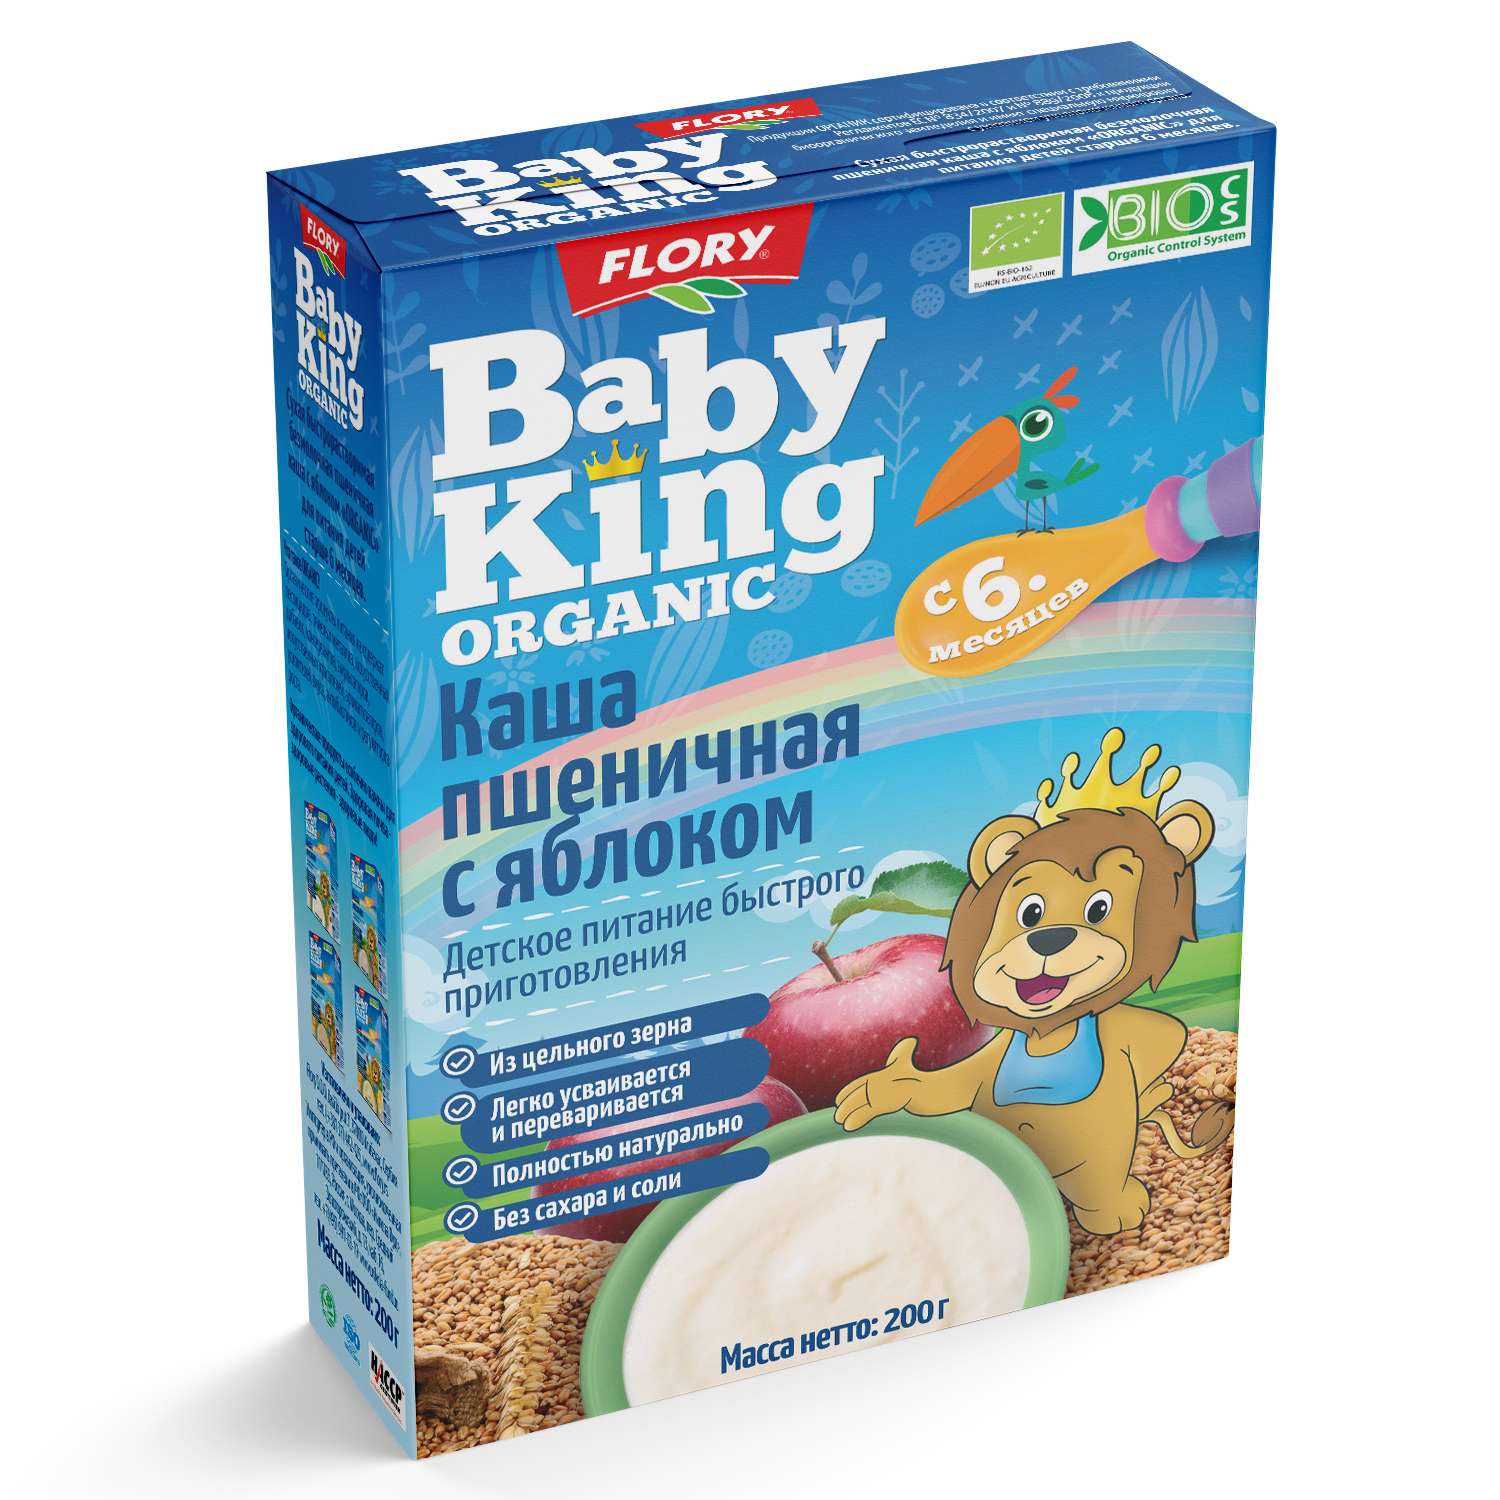 Каша безмолочная Baby King Organic пшеничная с яблоком 200г - фото 2